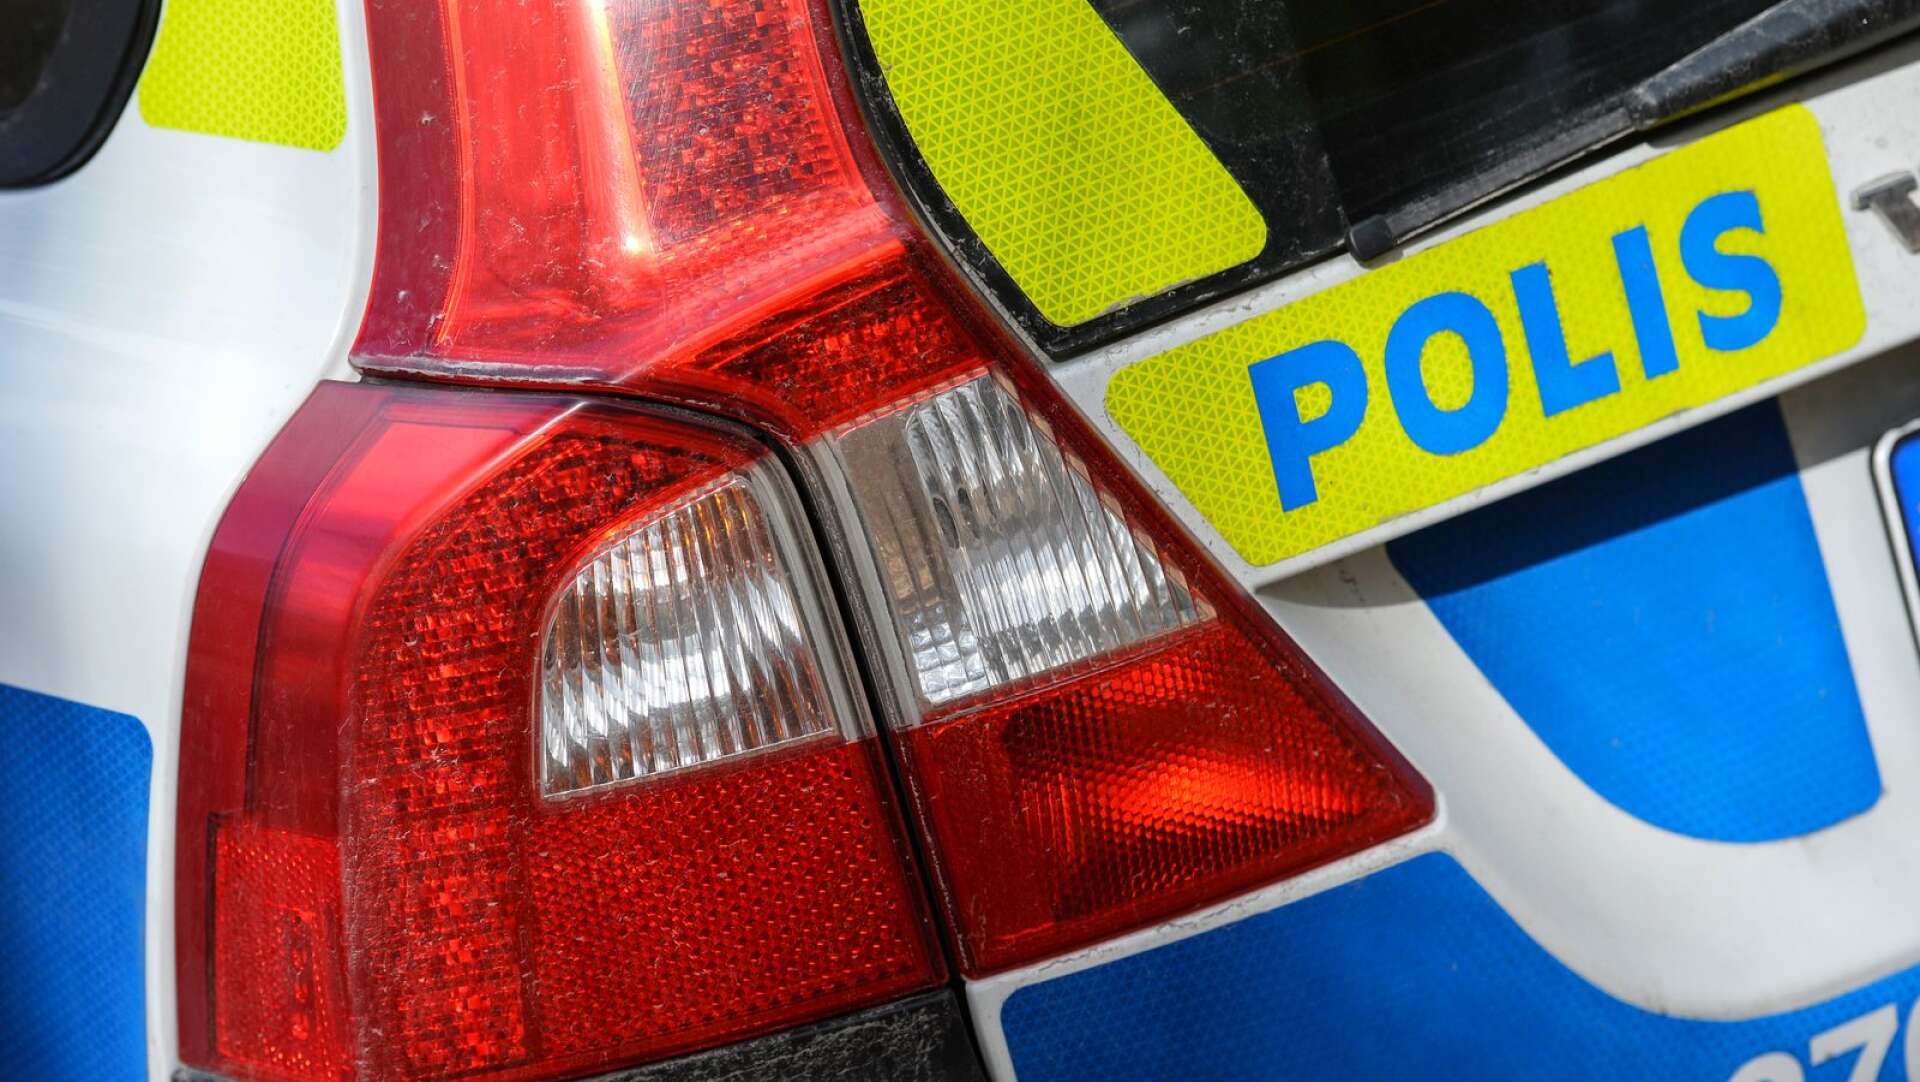 En polisbil blev påbackad på Coop-parkeringen i Högsäter. Detta efter att en bilist först kört på en annan bil. Den skyldige bilisten försökte sedan smita från platsen.